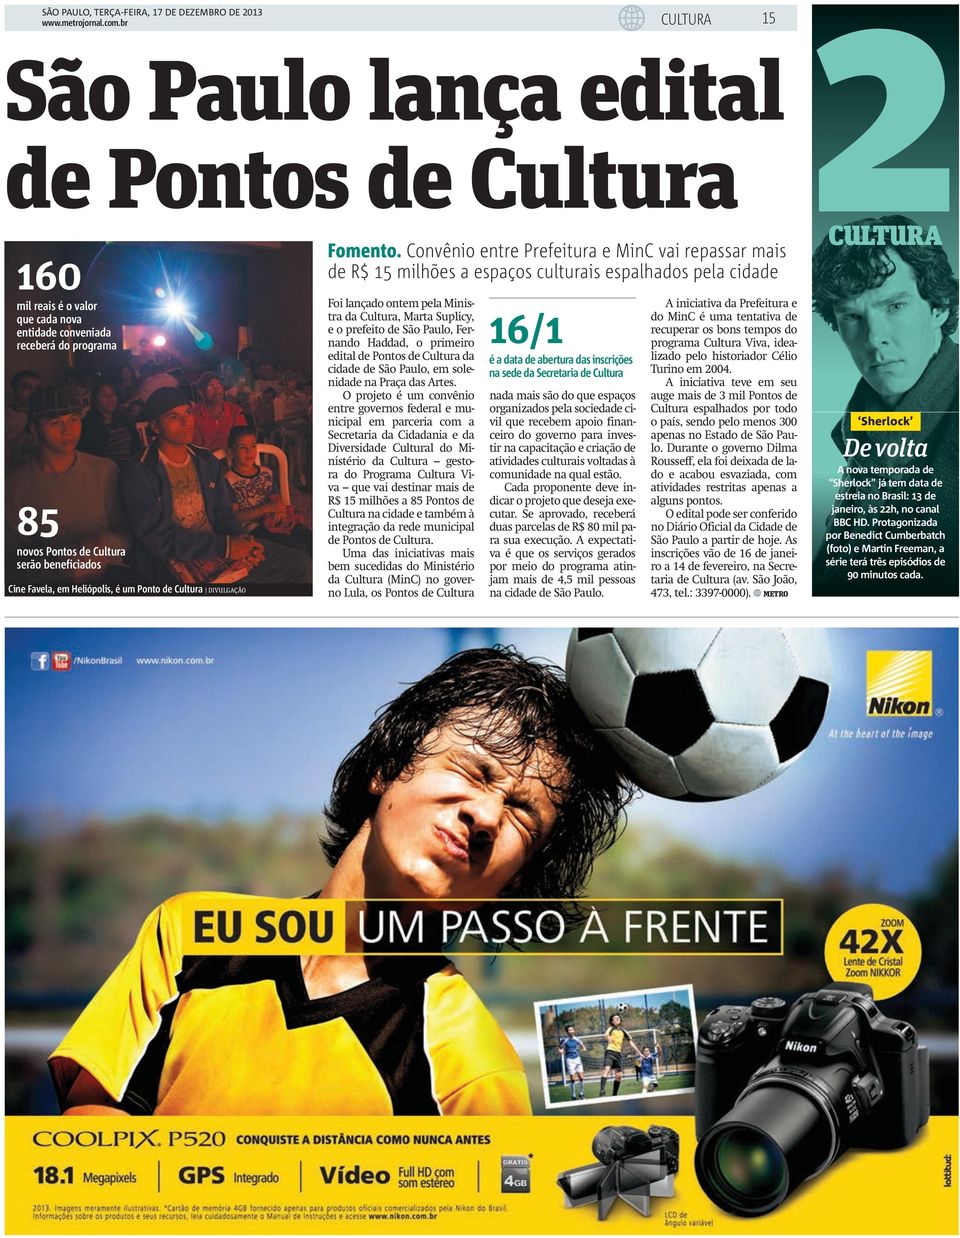 Fernando Haddad, o 16/1 receberá do programa primeiro 85 novos Pontos de Cultura serão beneficiados Cine Favela, em Heliópolis, é um Ponto de Cultura DIVULGAÇÃO edital de Pontos de Cultura da cidade